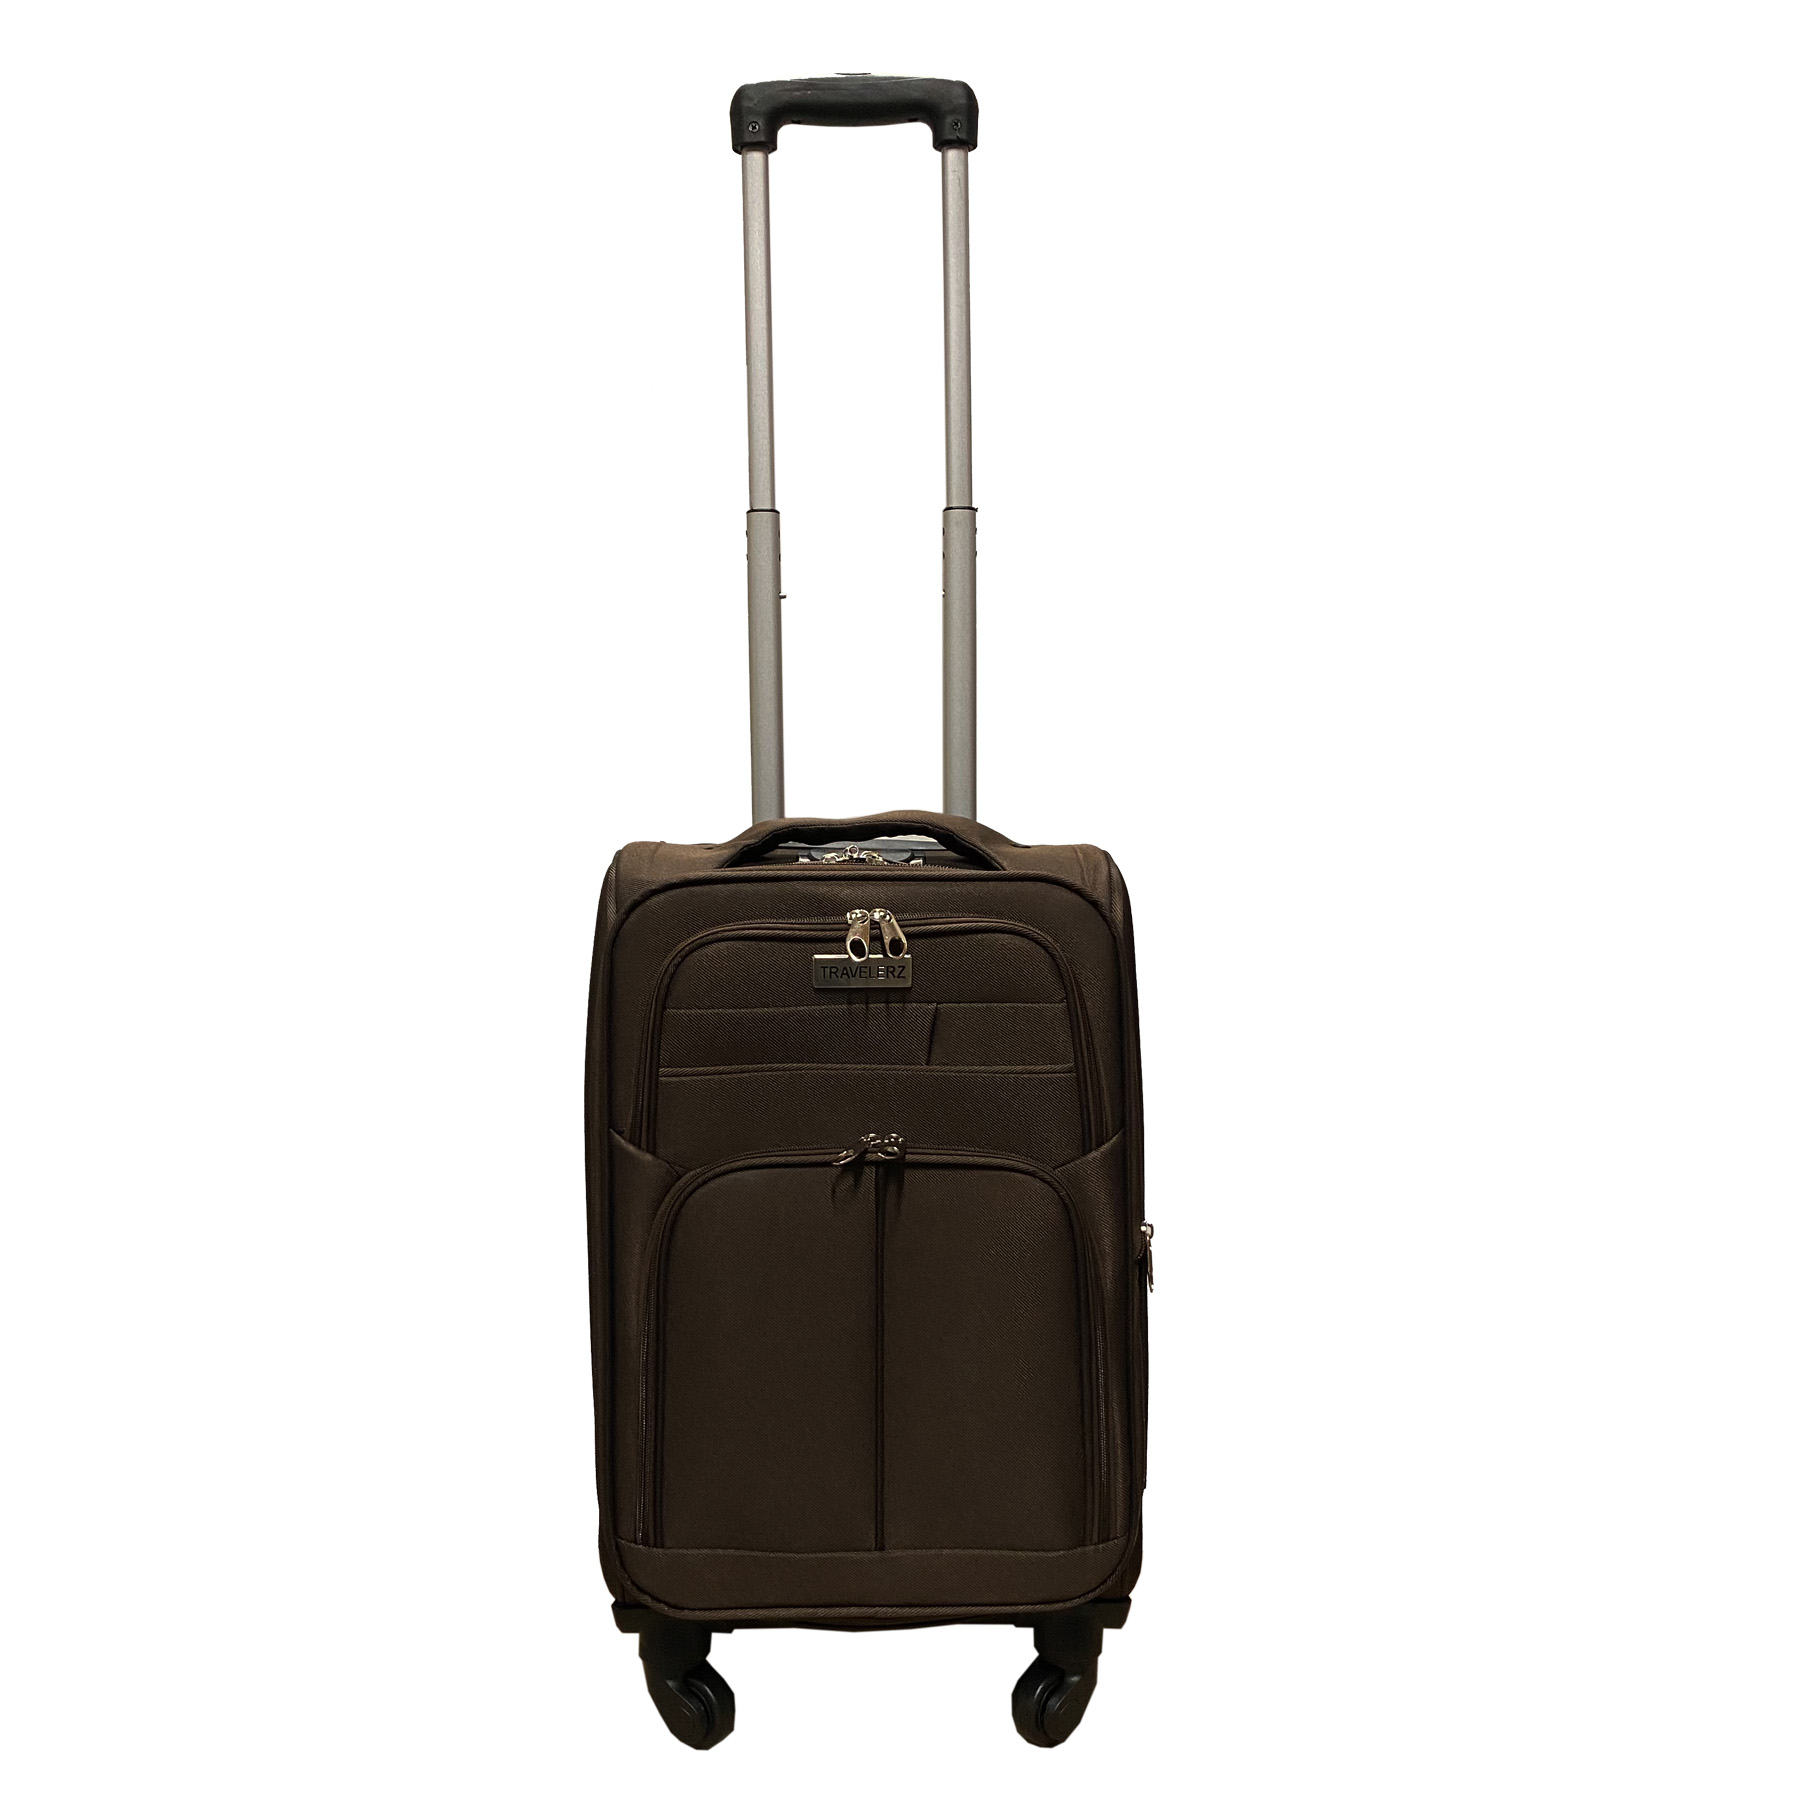 Travelerz handbagage reiskoffer met wielen softcase 42 liter - met cijferslot - expender - voorvakken - bruin- Deze softcase handbagage reiskoffer liter van